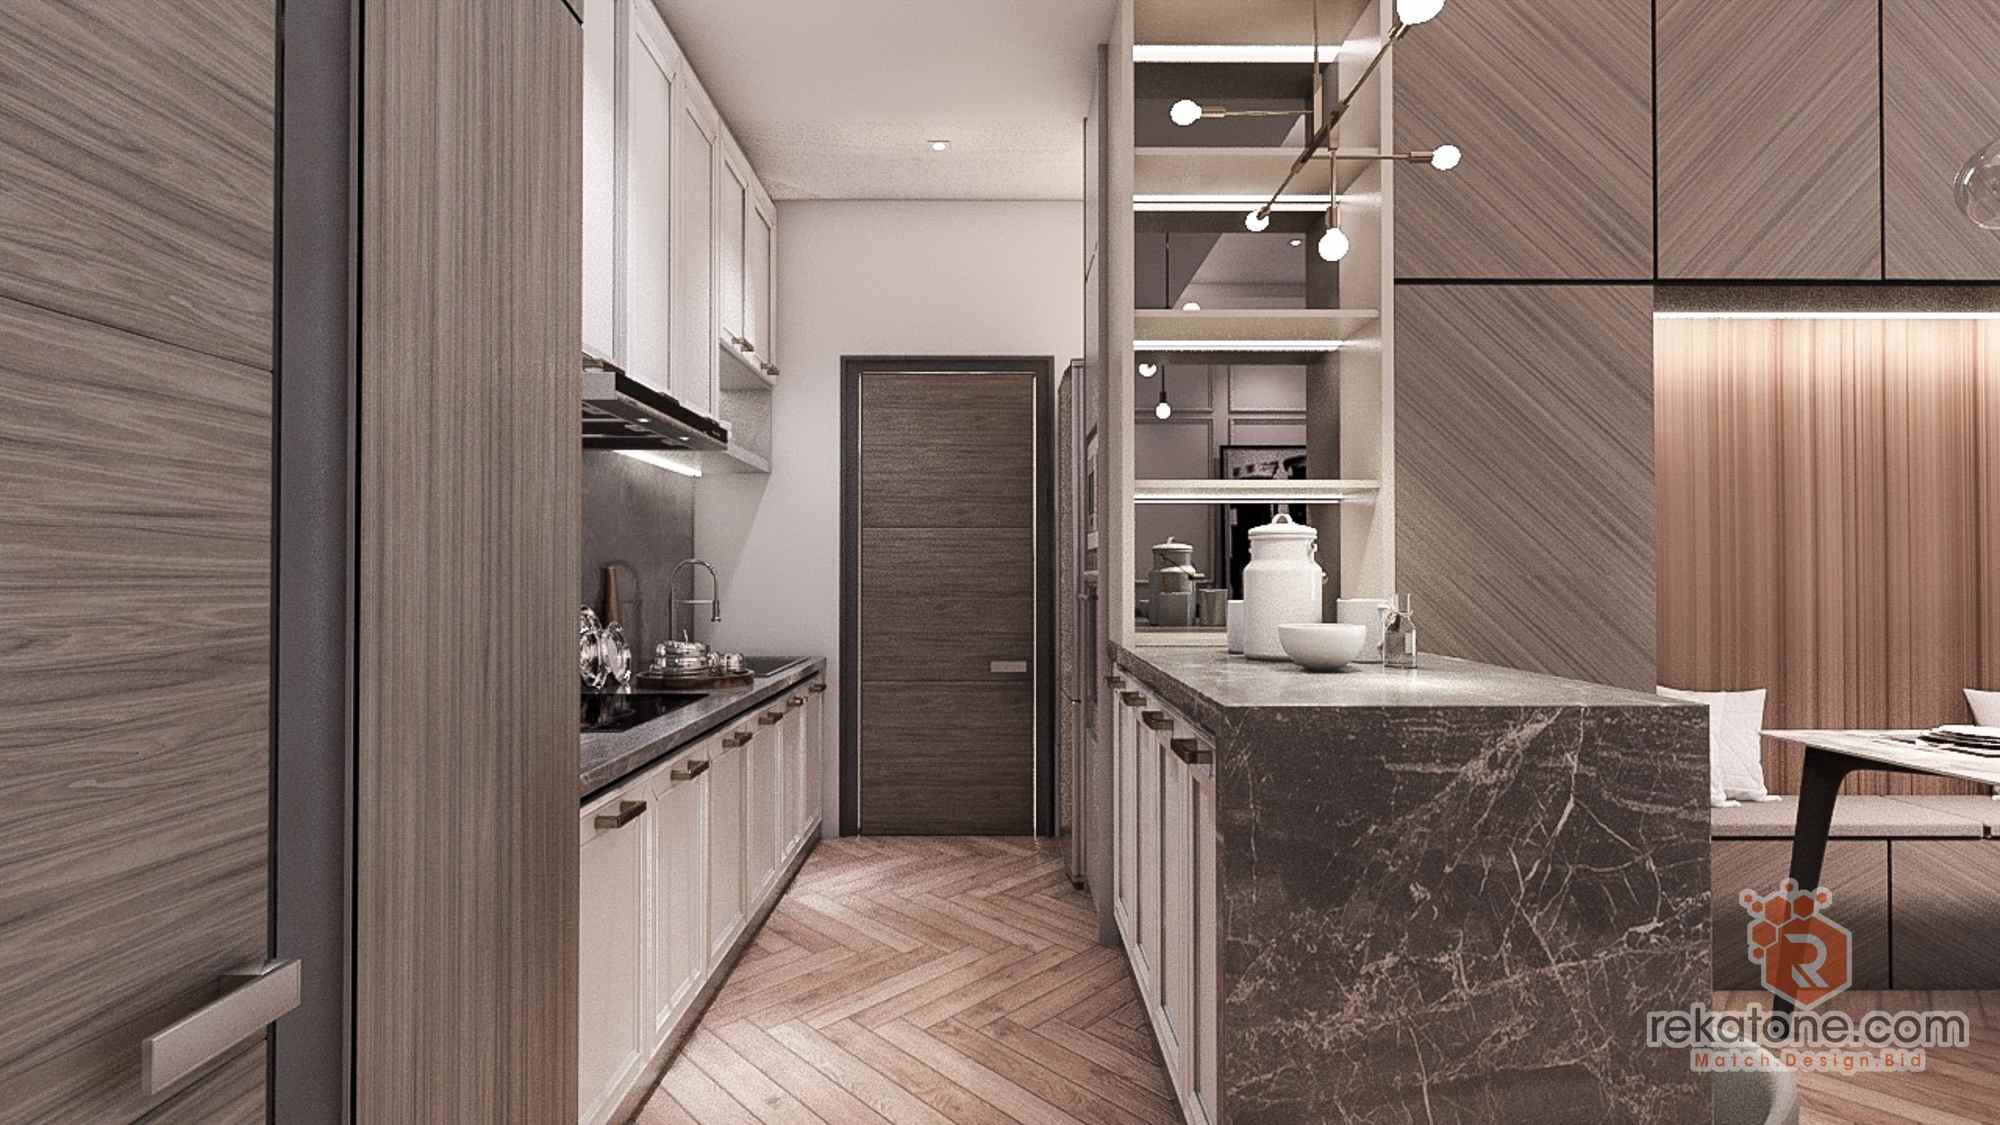 Small Kitchen Design For Condo /Apartment Malaysia 20   rekatone.com